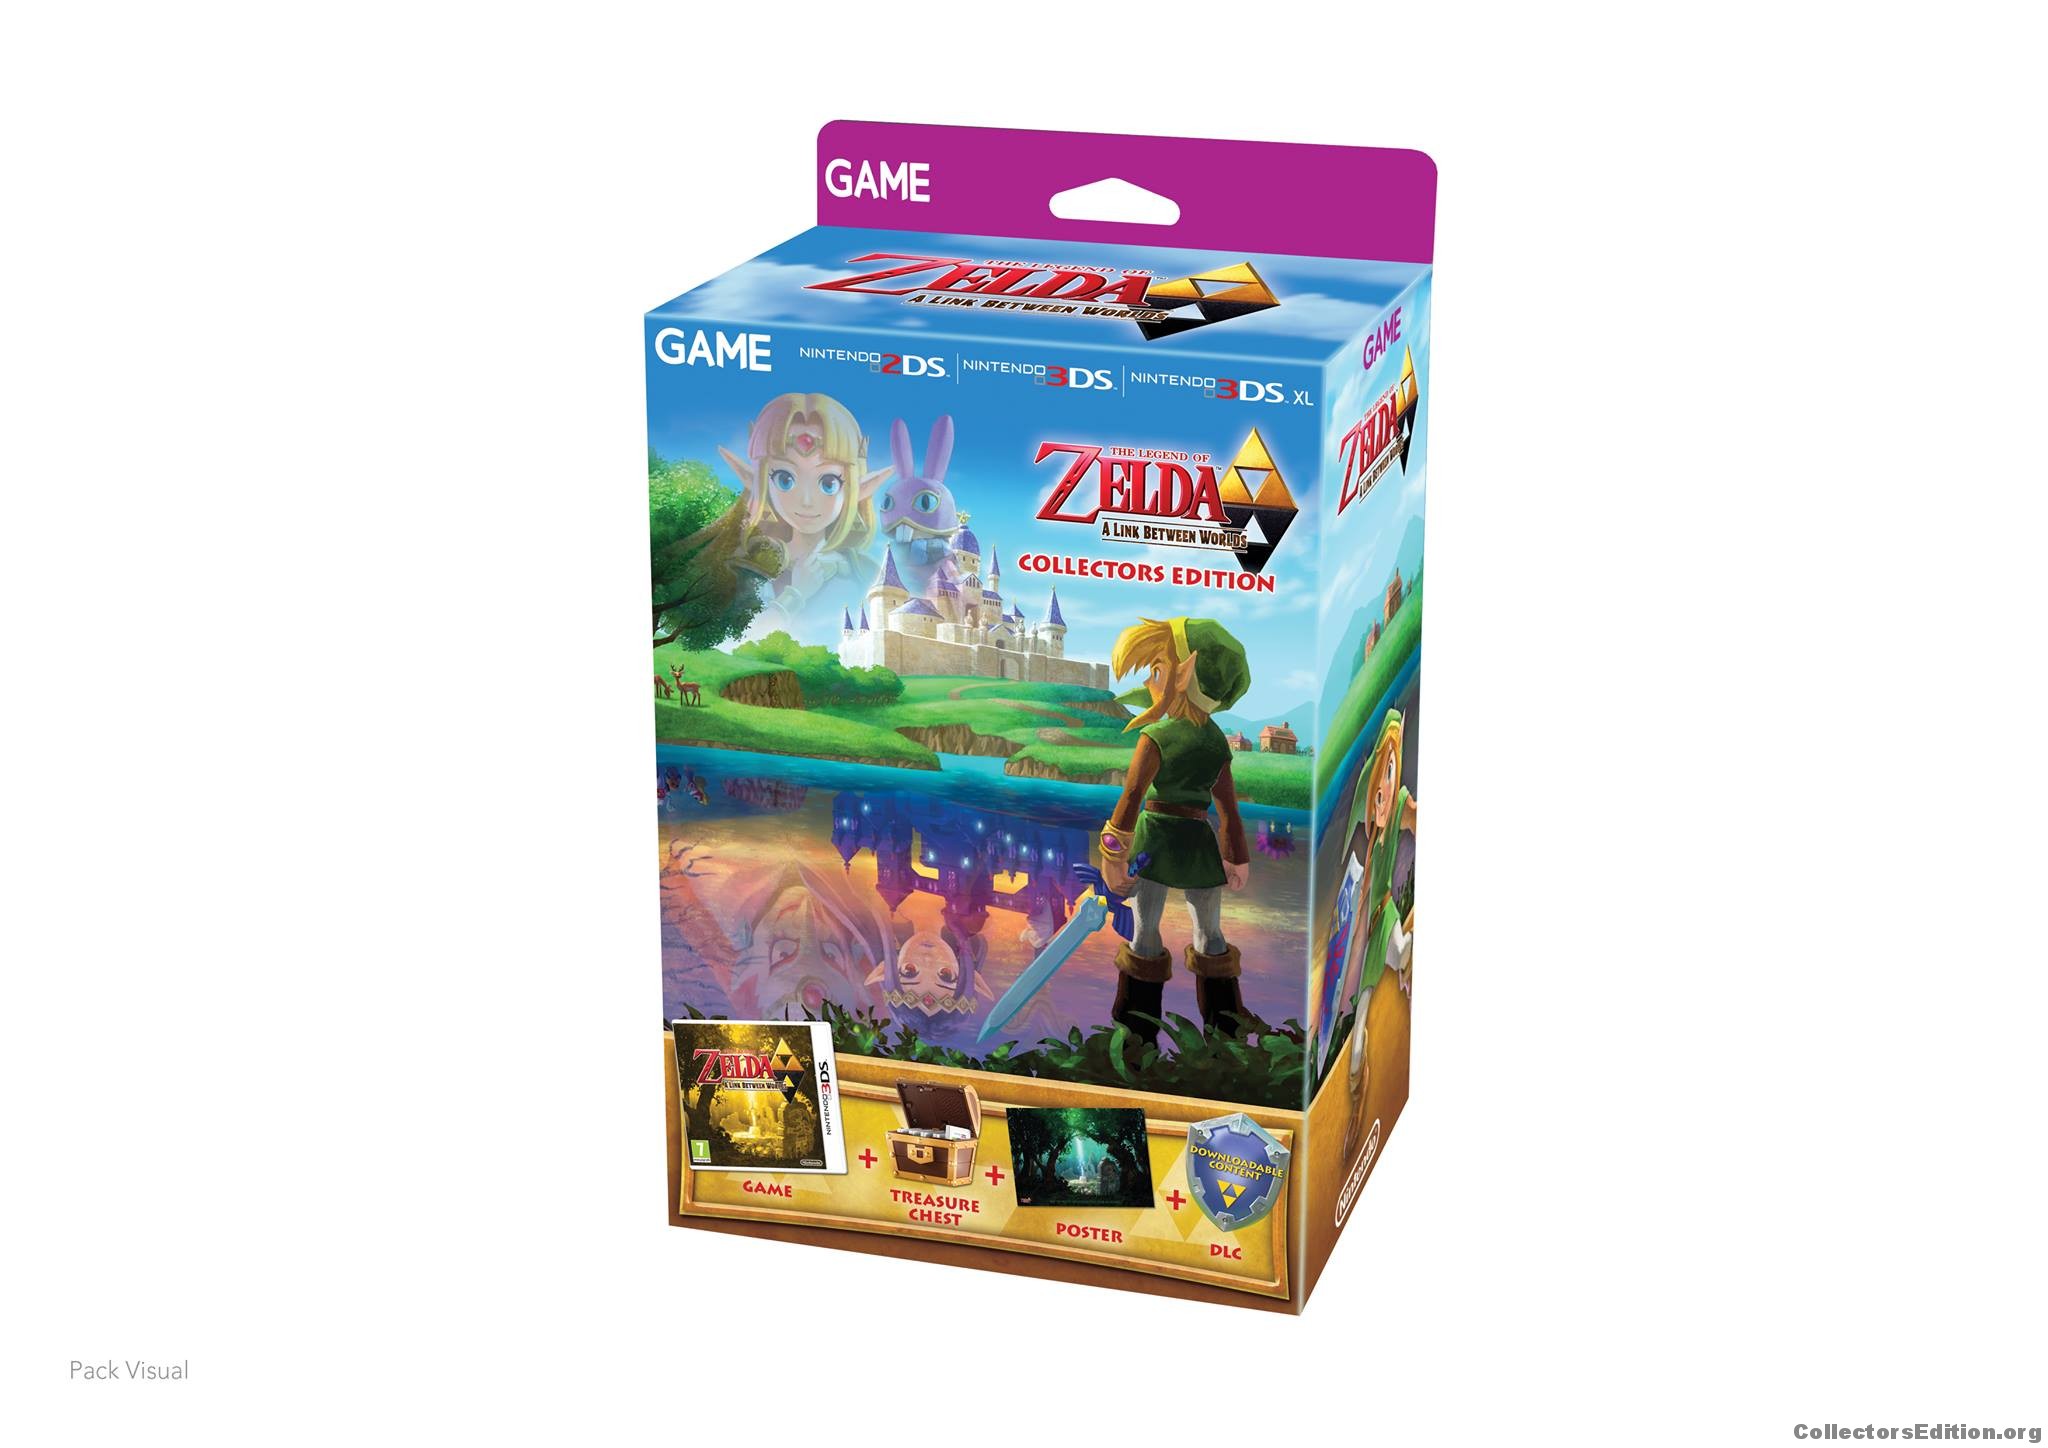 Nintendo 3DS XL Zelda Link Between Worlds Complete For Sale